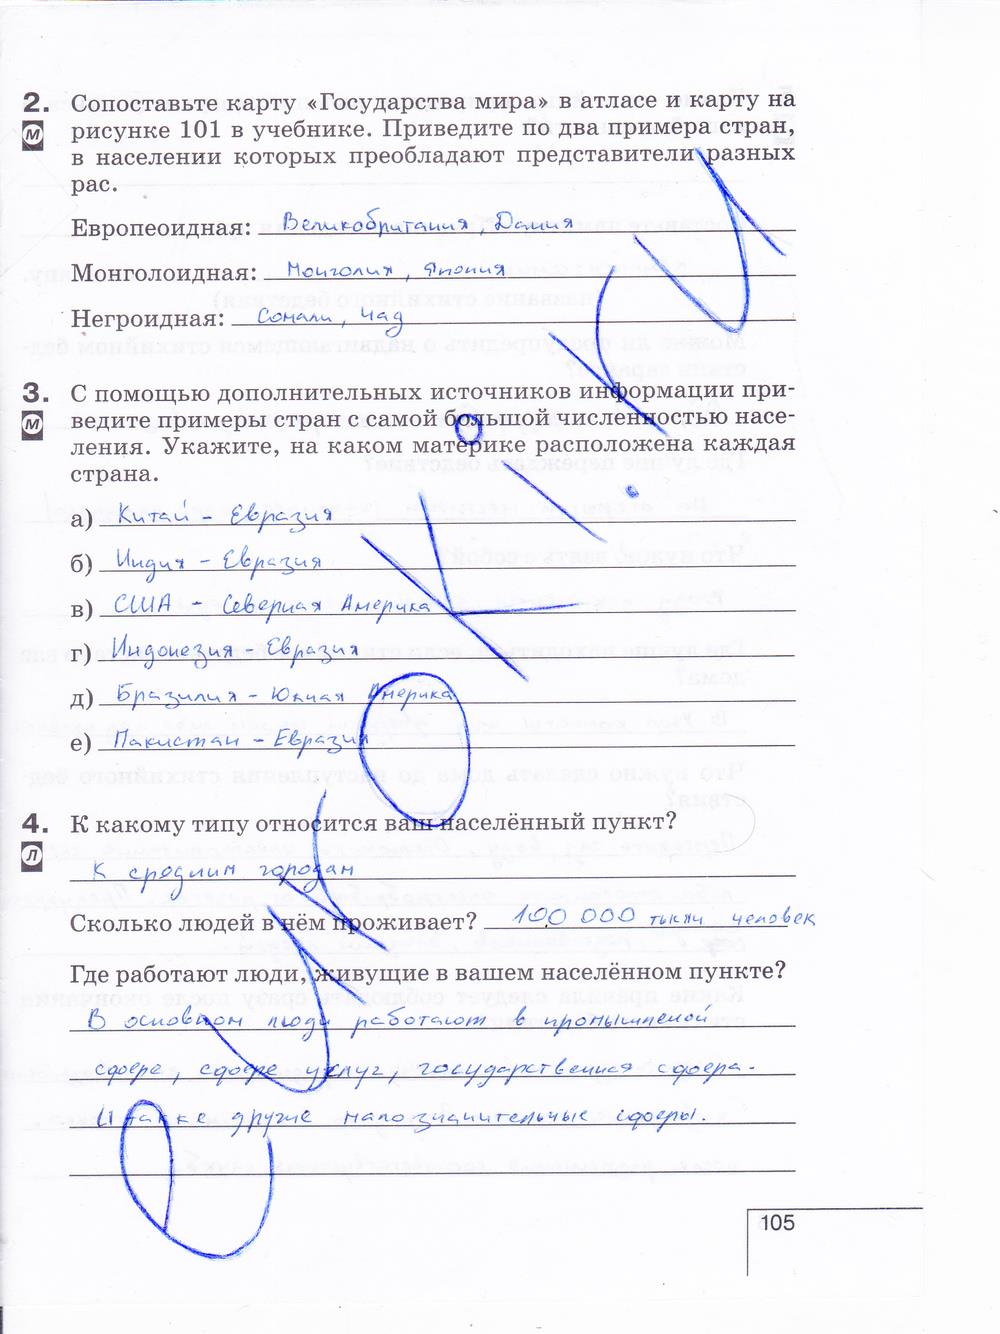 гдз 6 класс рабочая тетрадь страница 105 география Карташева, Курчина